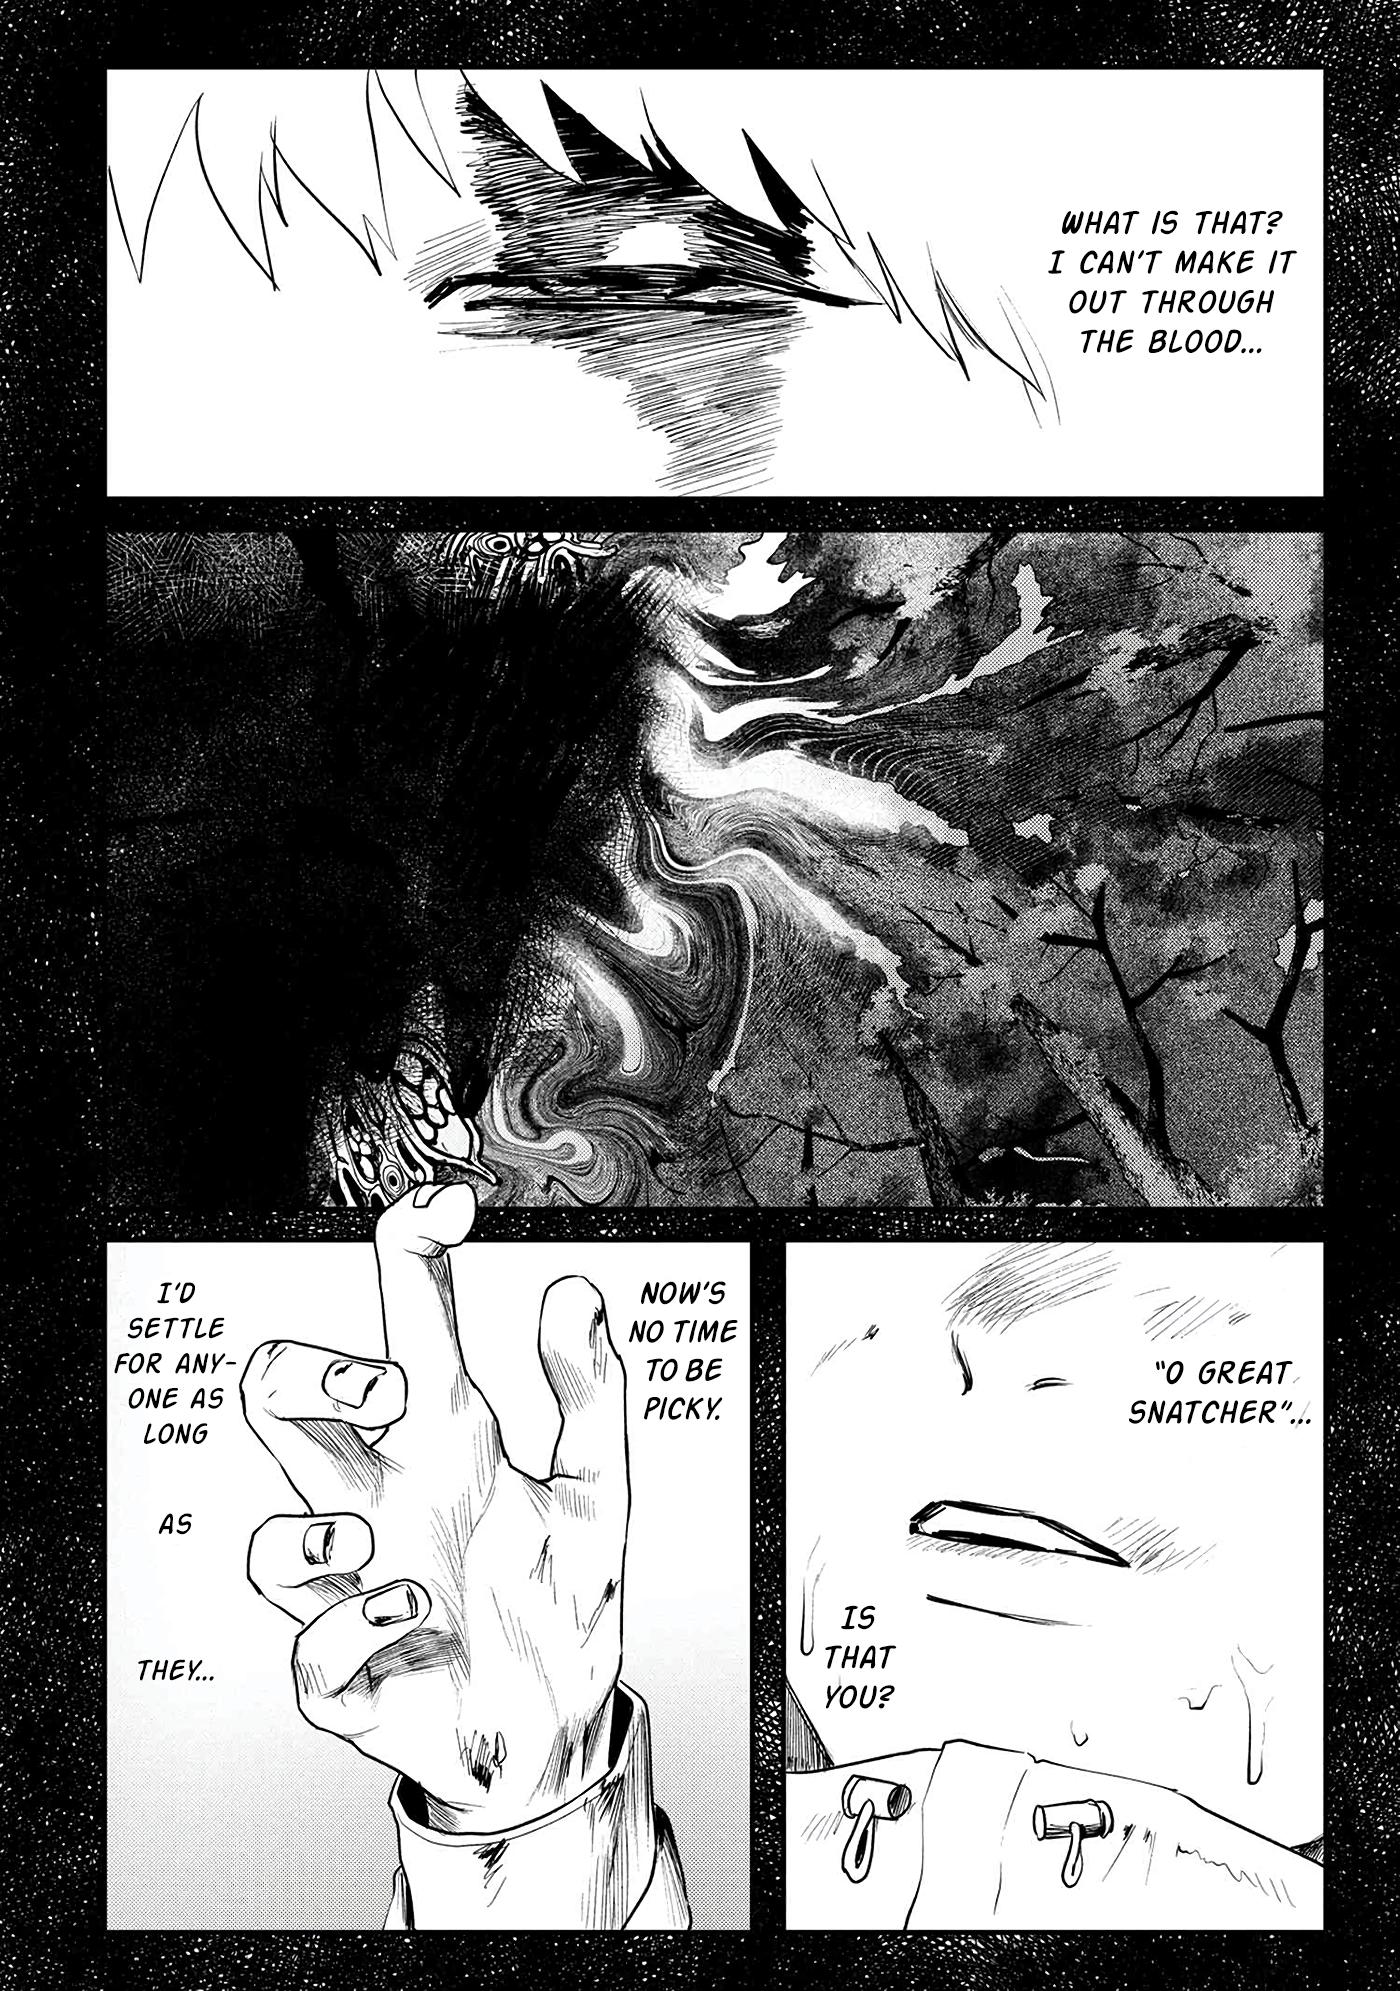 Hikaru ga Shinda Natsu Vol.0 Ch.0 Page 12 - Mangago